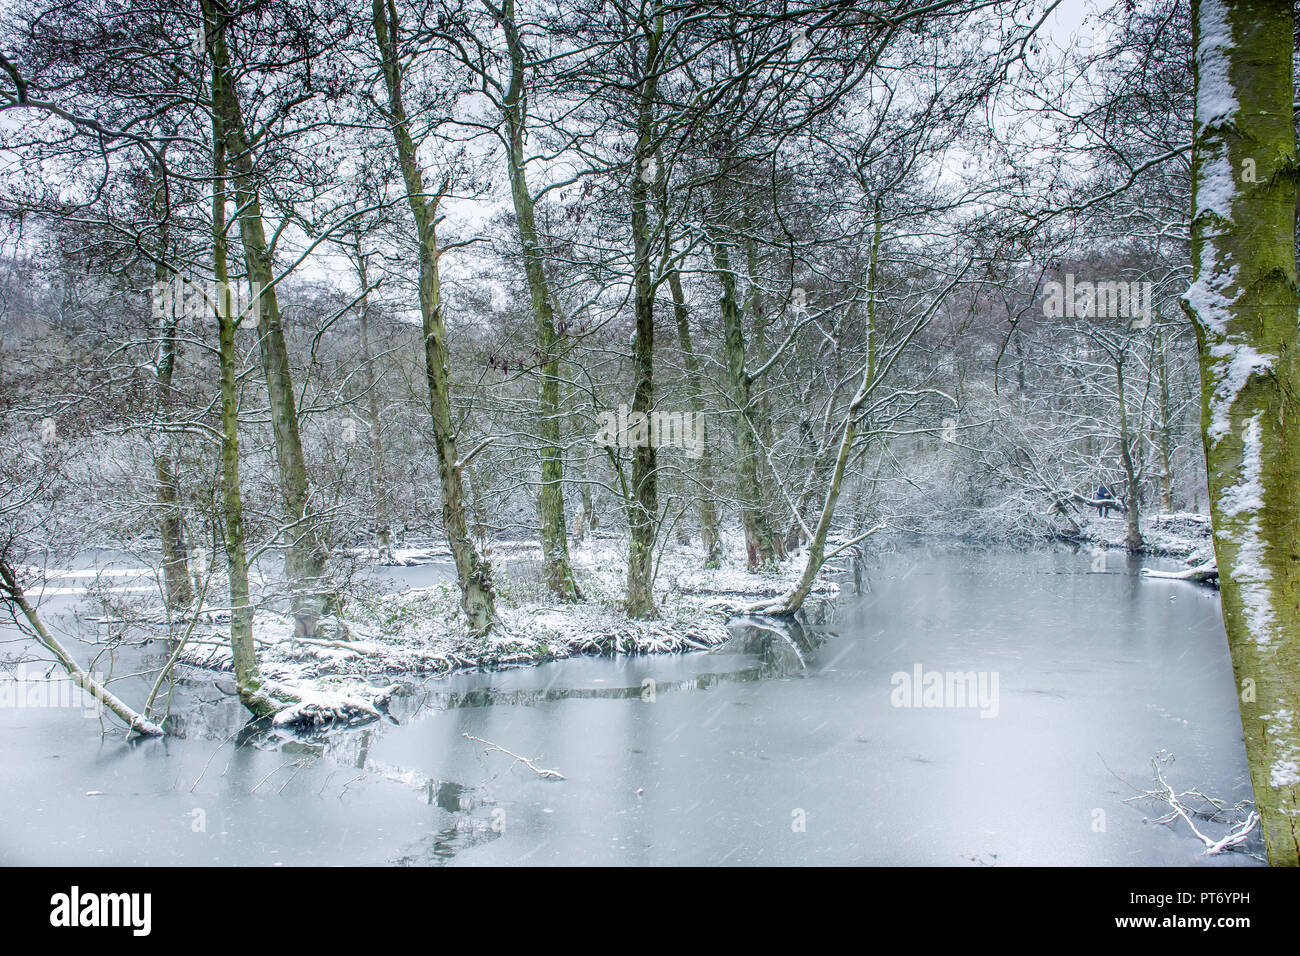 País de las maravillas invernal paisaje.lago congelado en british woodland y caída de nieve.hielo que cubre la superficie del estanque en el desierto.bosque nevado paisaje.La Naturaleza en el Reino Unido. Foto de stock